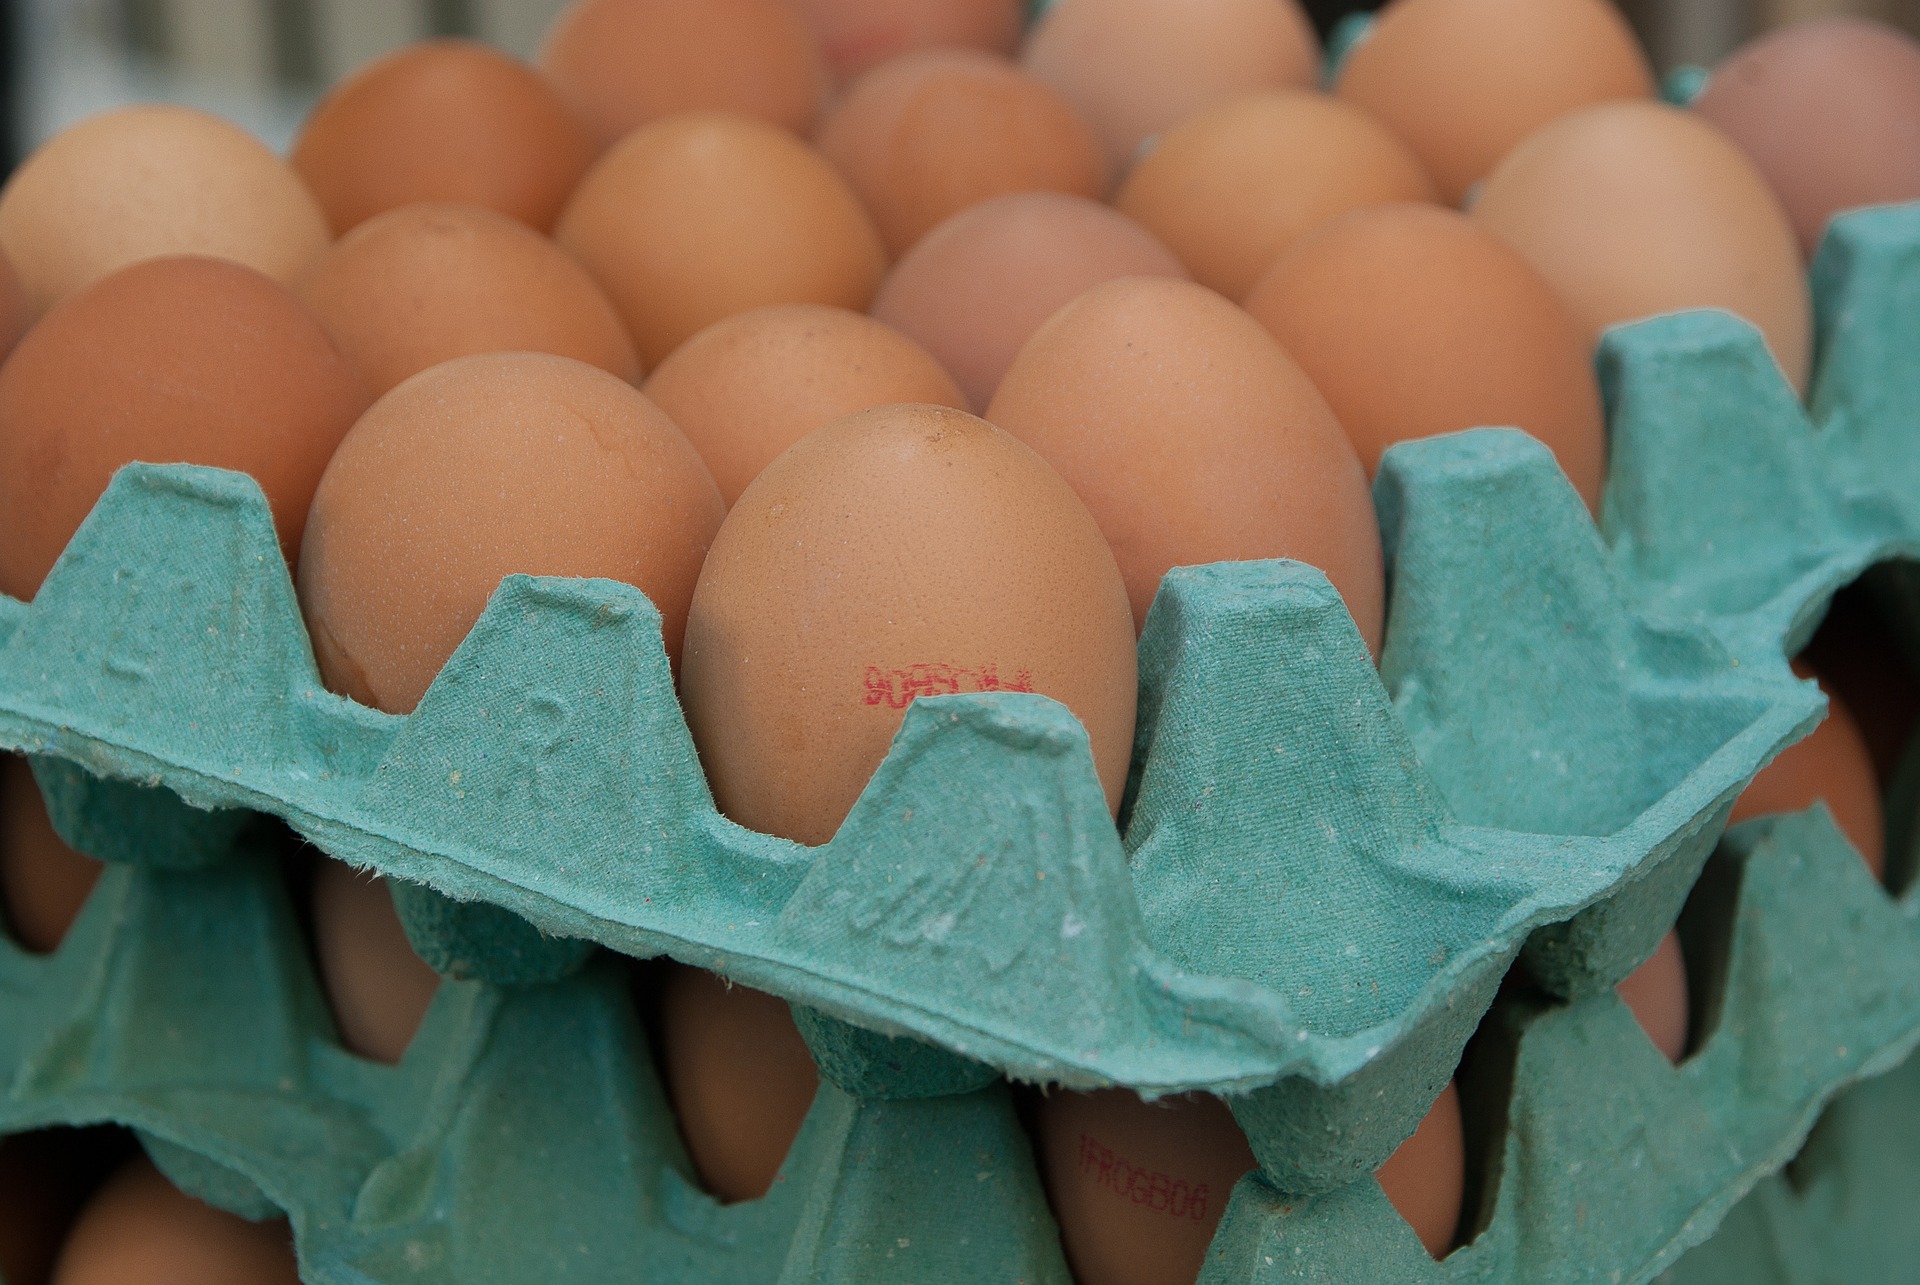 Polacy częściej sięgają po jaja z chowu alternatywnego